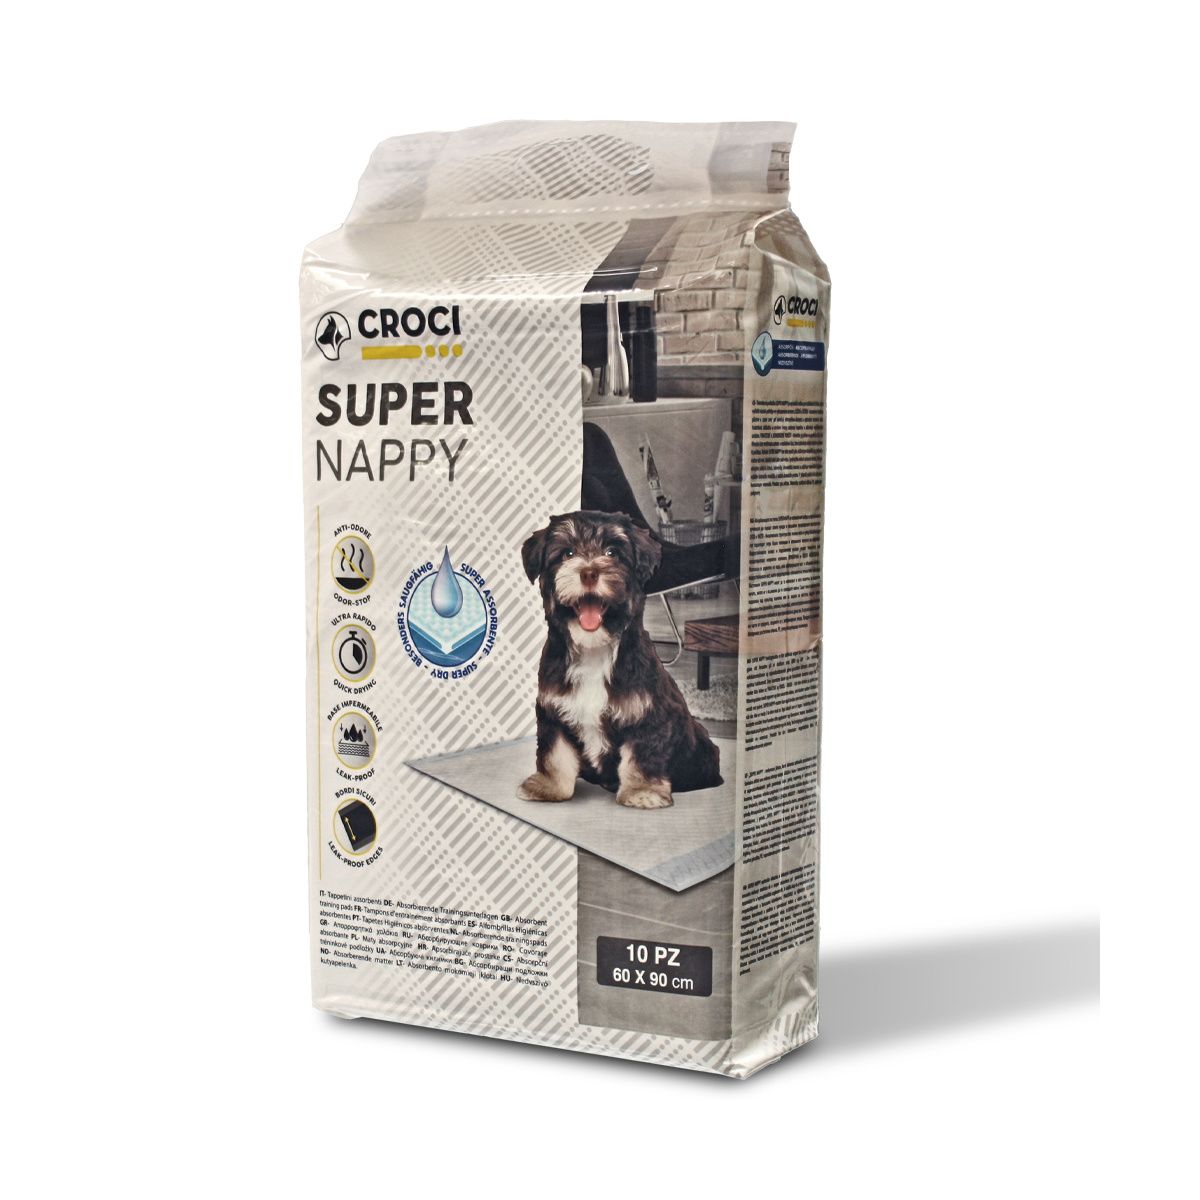 TAPIS ABSORBANT SUPER NAPPY 90X60 50PCS CROCI - Hygiène - Bobby -  Accessoires pour chien et chat - Colliers, manteaux, pulls